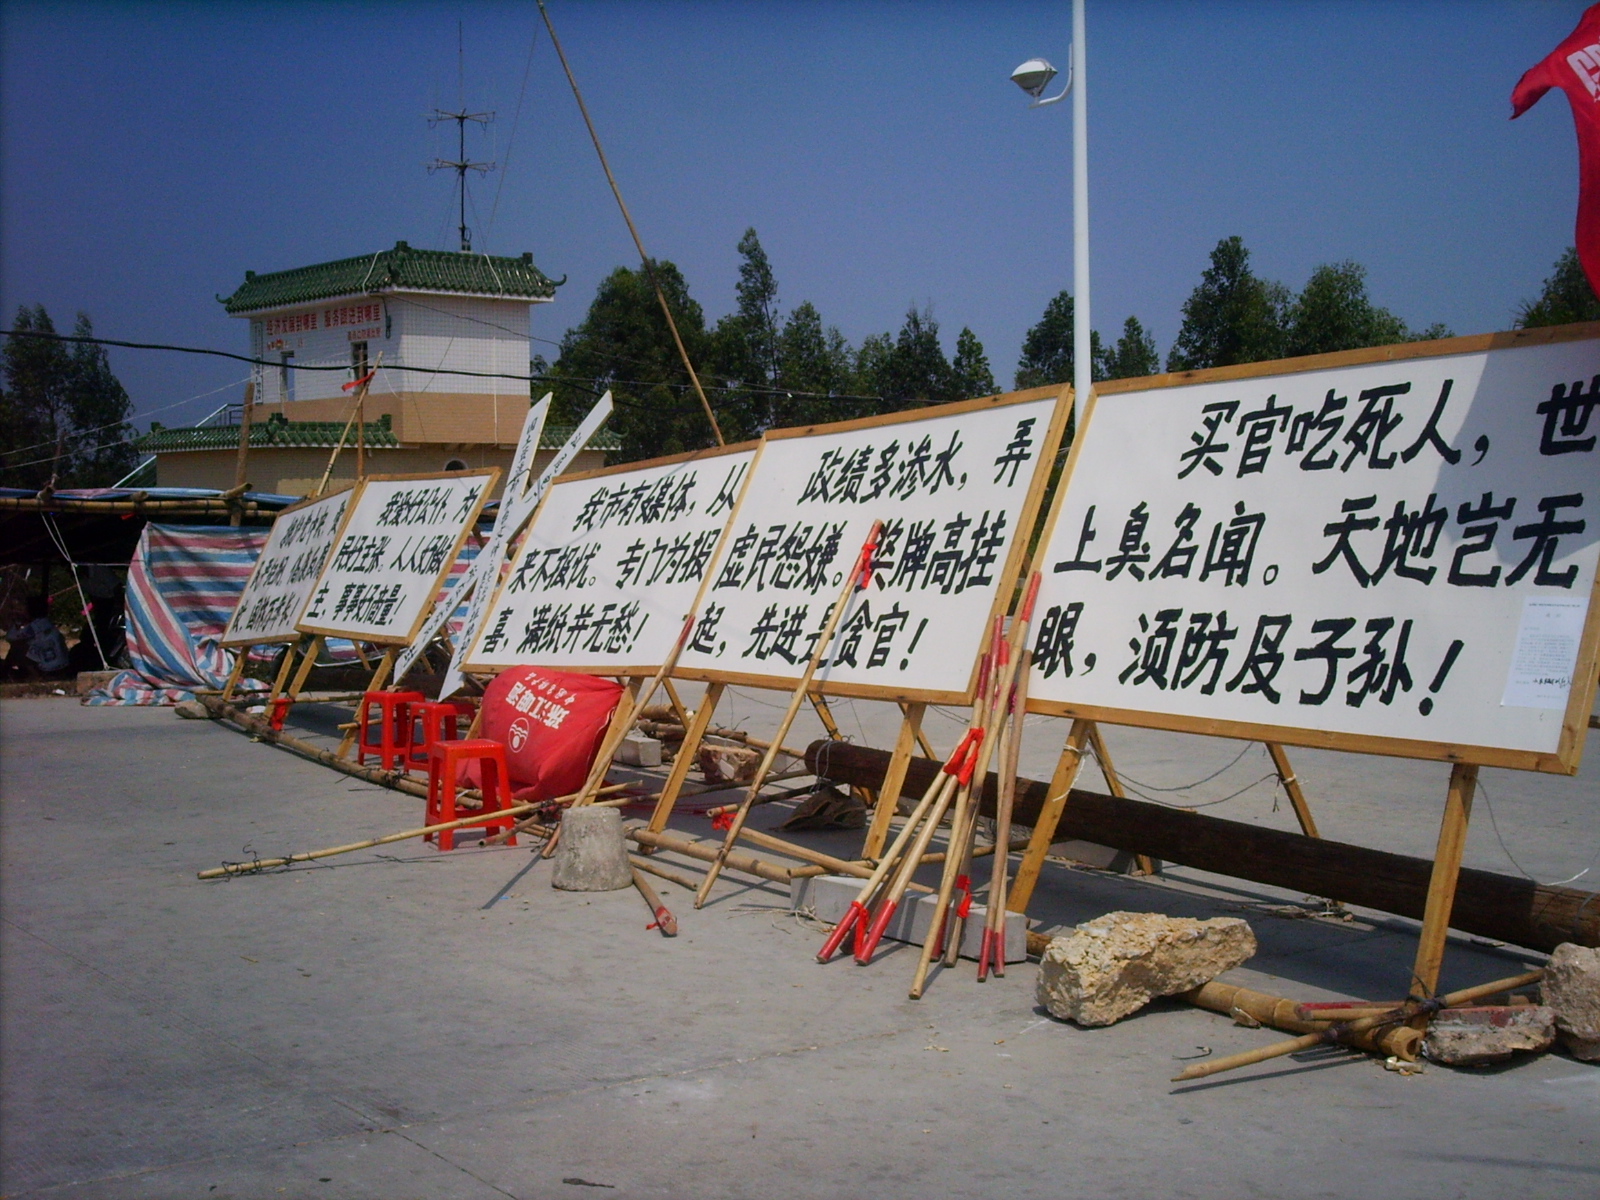 Chinesische Dorfbewohner wegen Protest gegen Bodenraub von Polizei erschossen